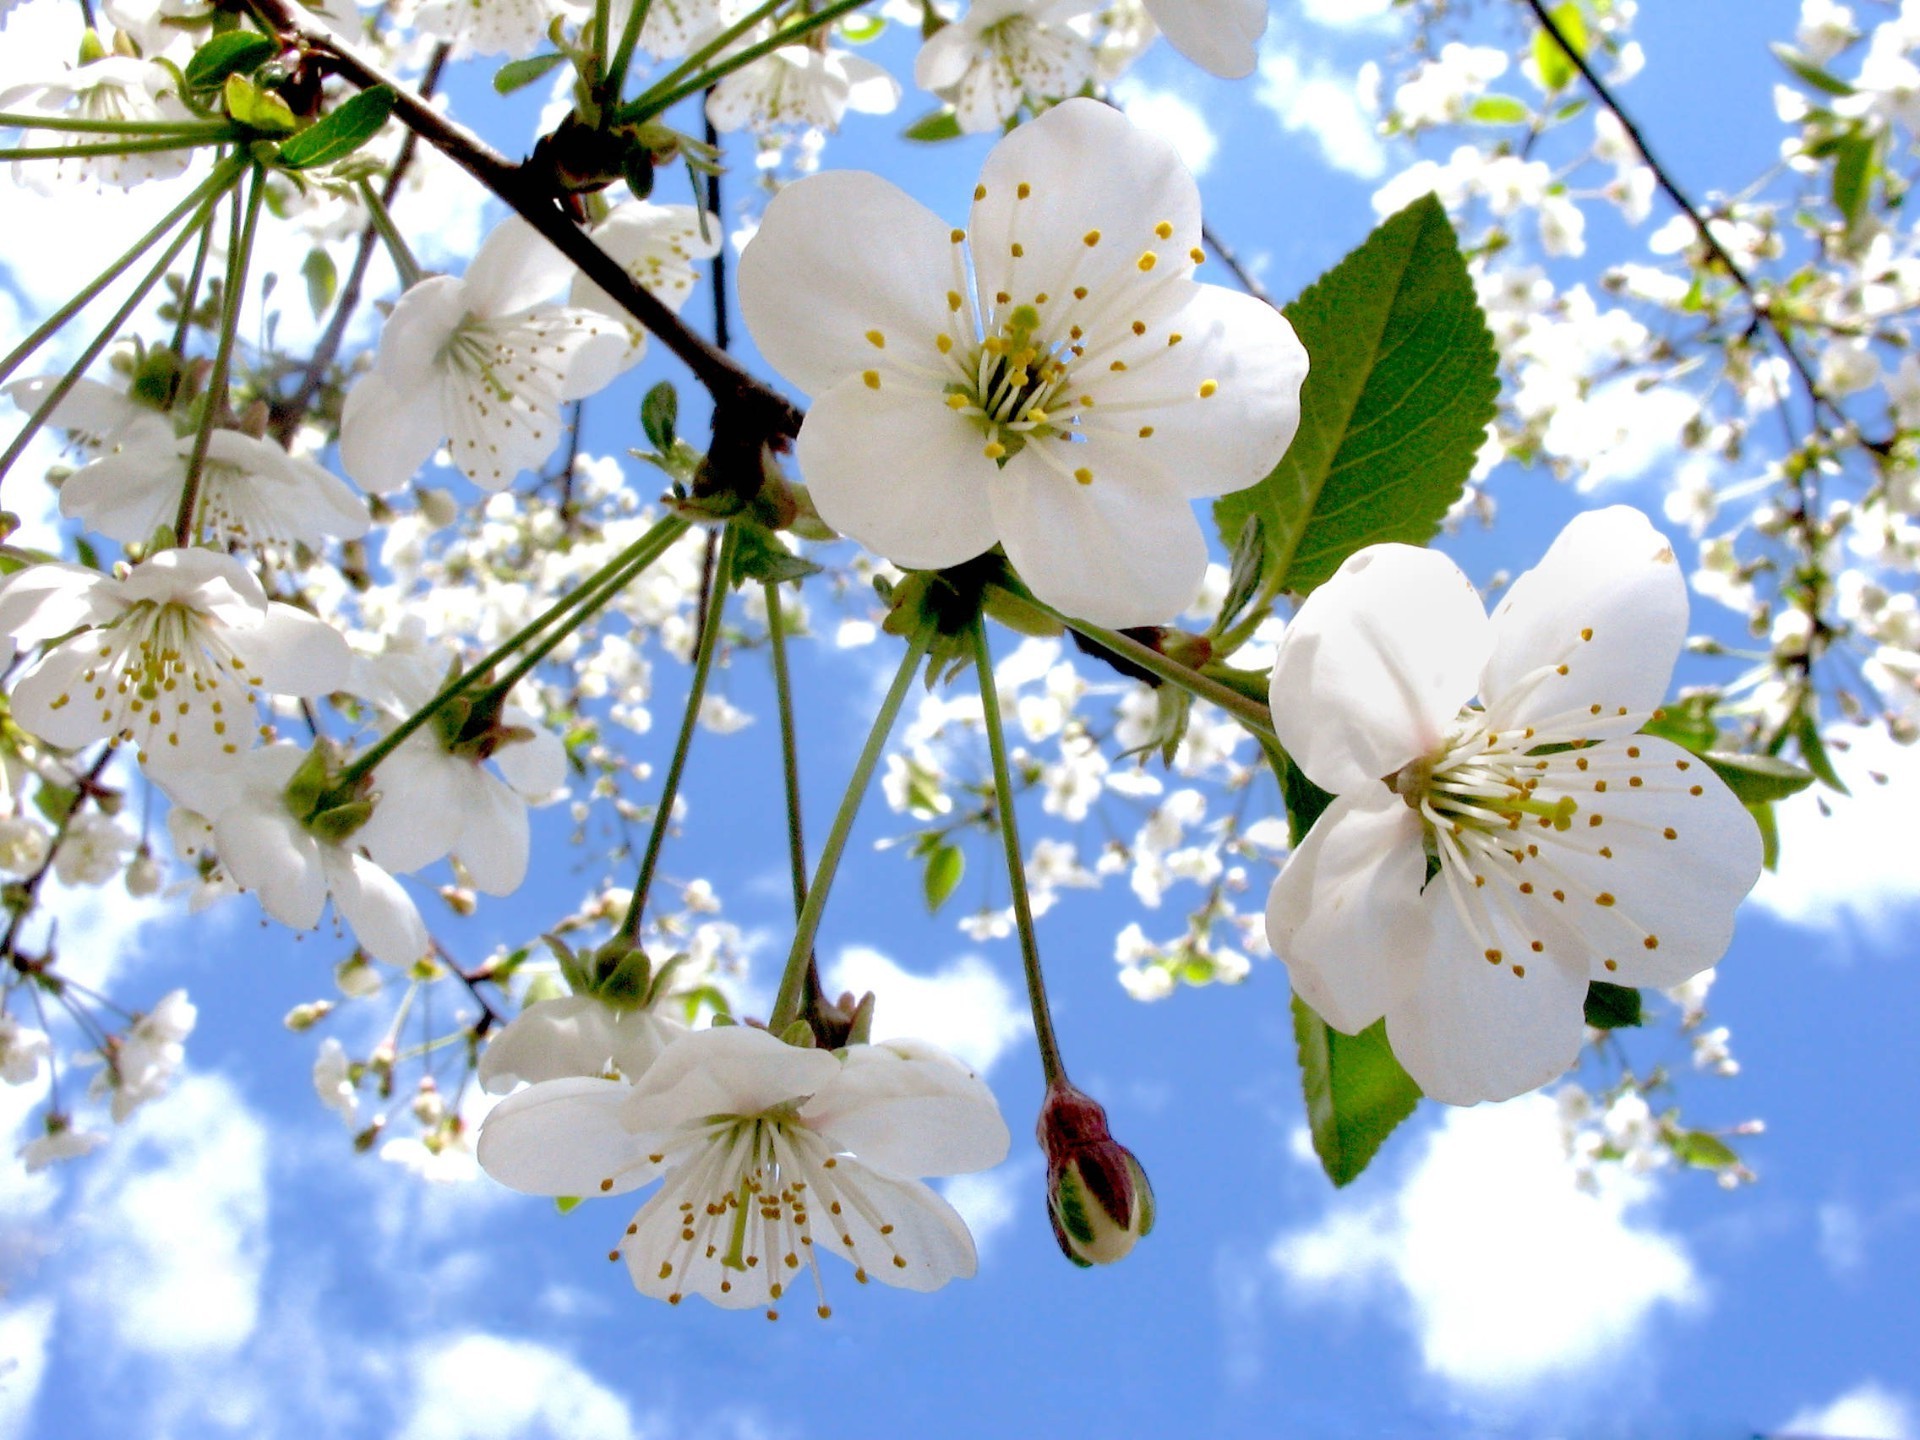 весна цветок вишня филиал природа флора дерево блюминг сезон яблоко сад лепесток дружище лист цветочные рост лето сливы красивые яркий крупным планом